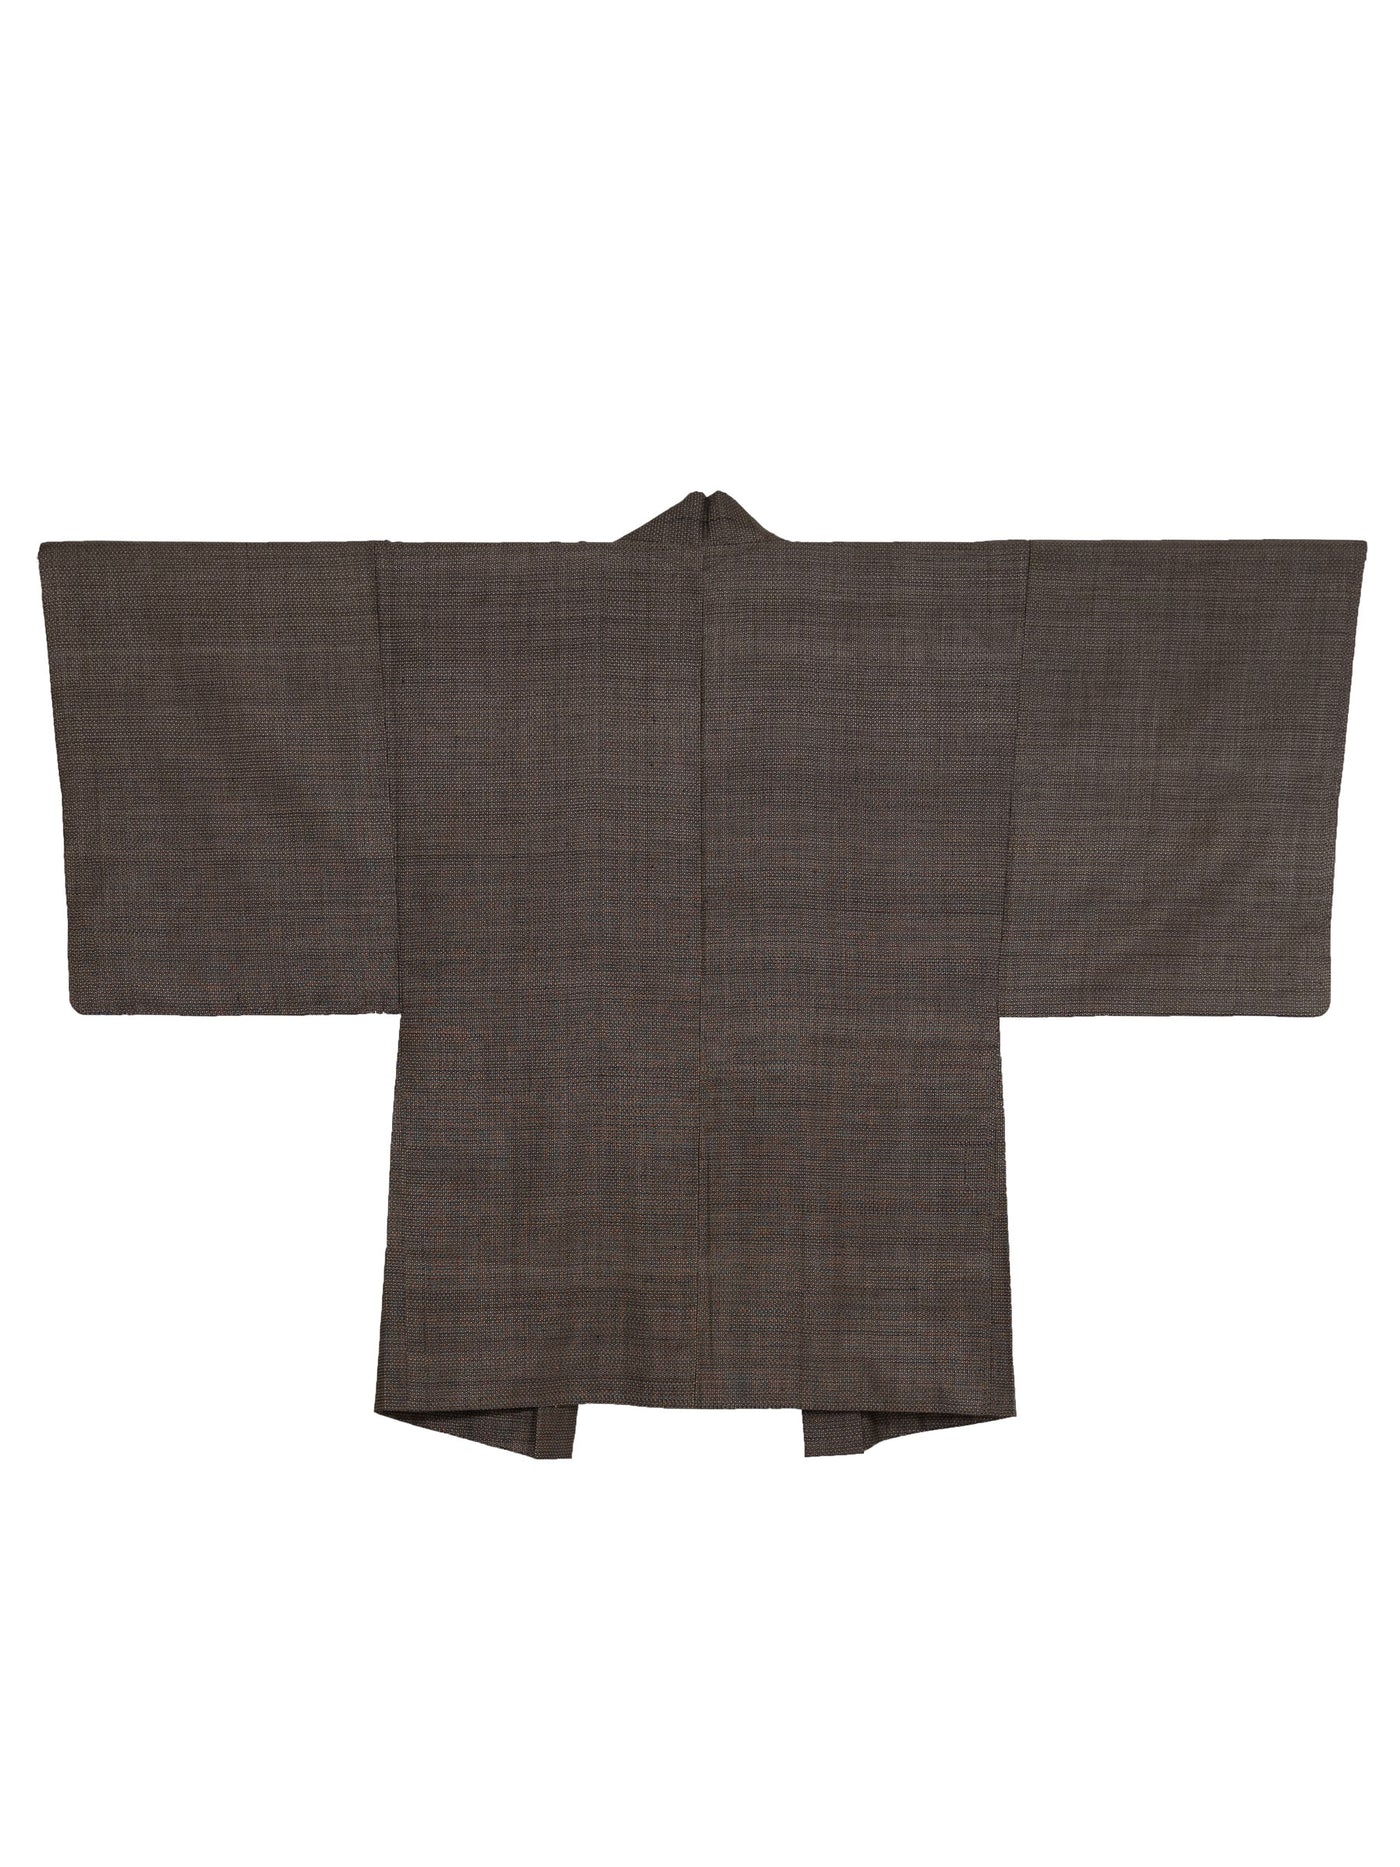 Vintage Miya Men's Haori Jacket